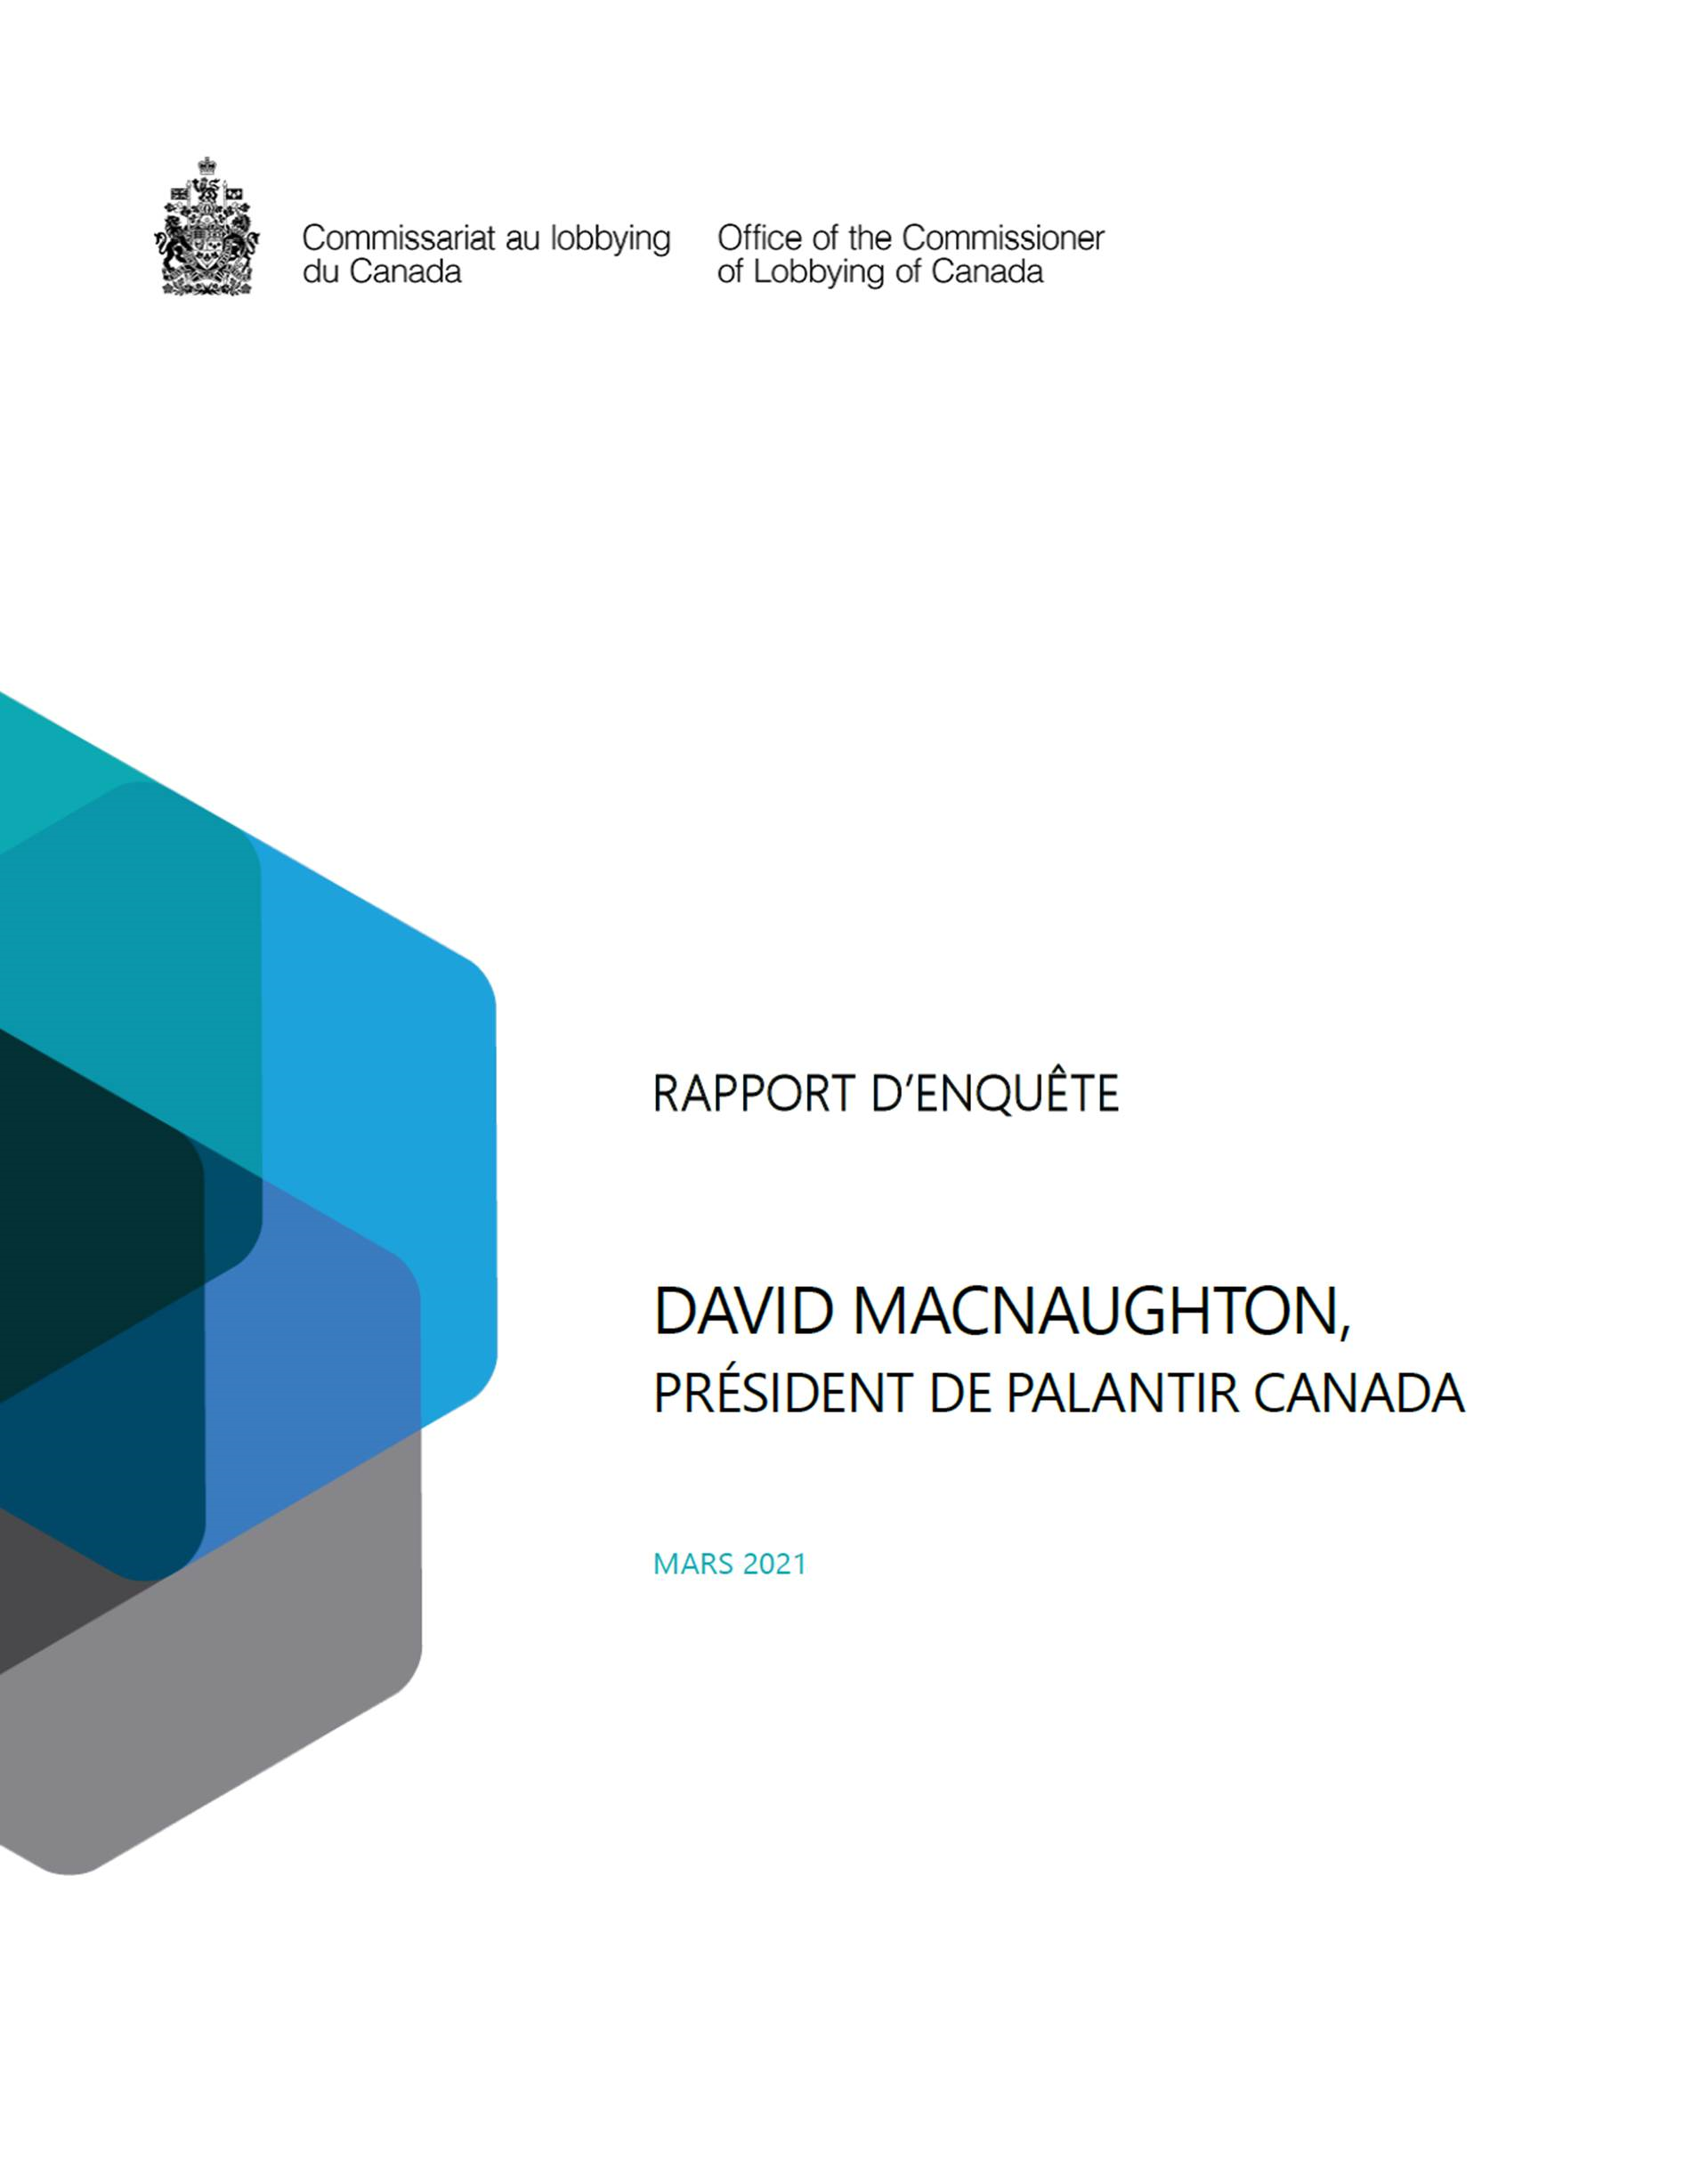 Couverture du rapport d'enquete sur David MacNaughton